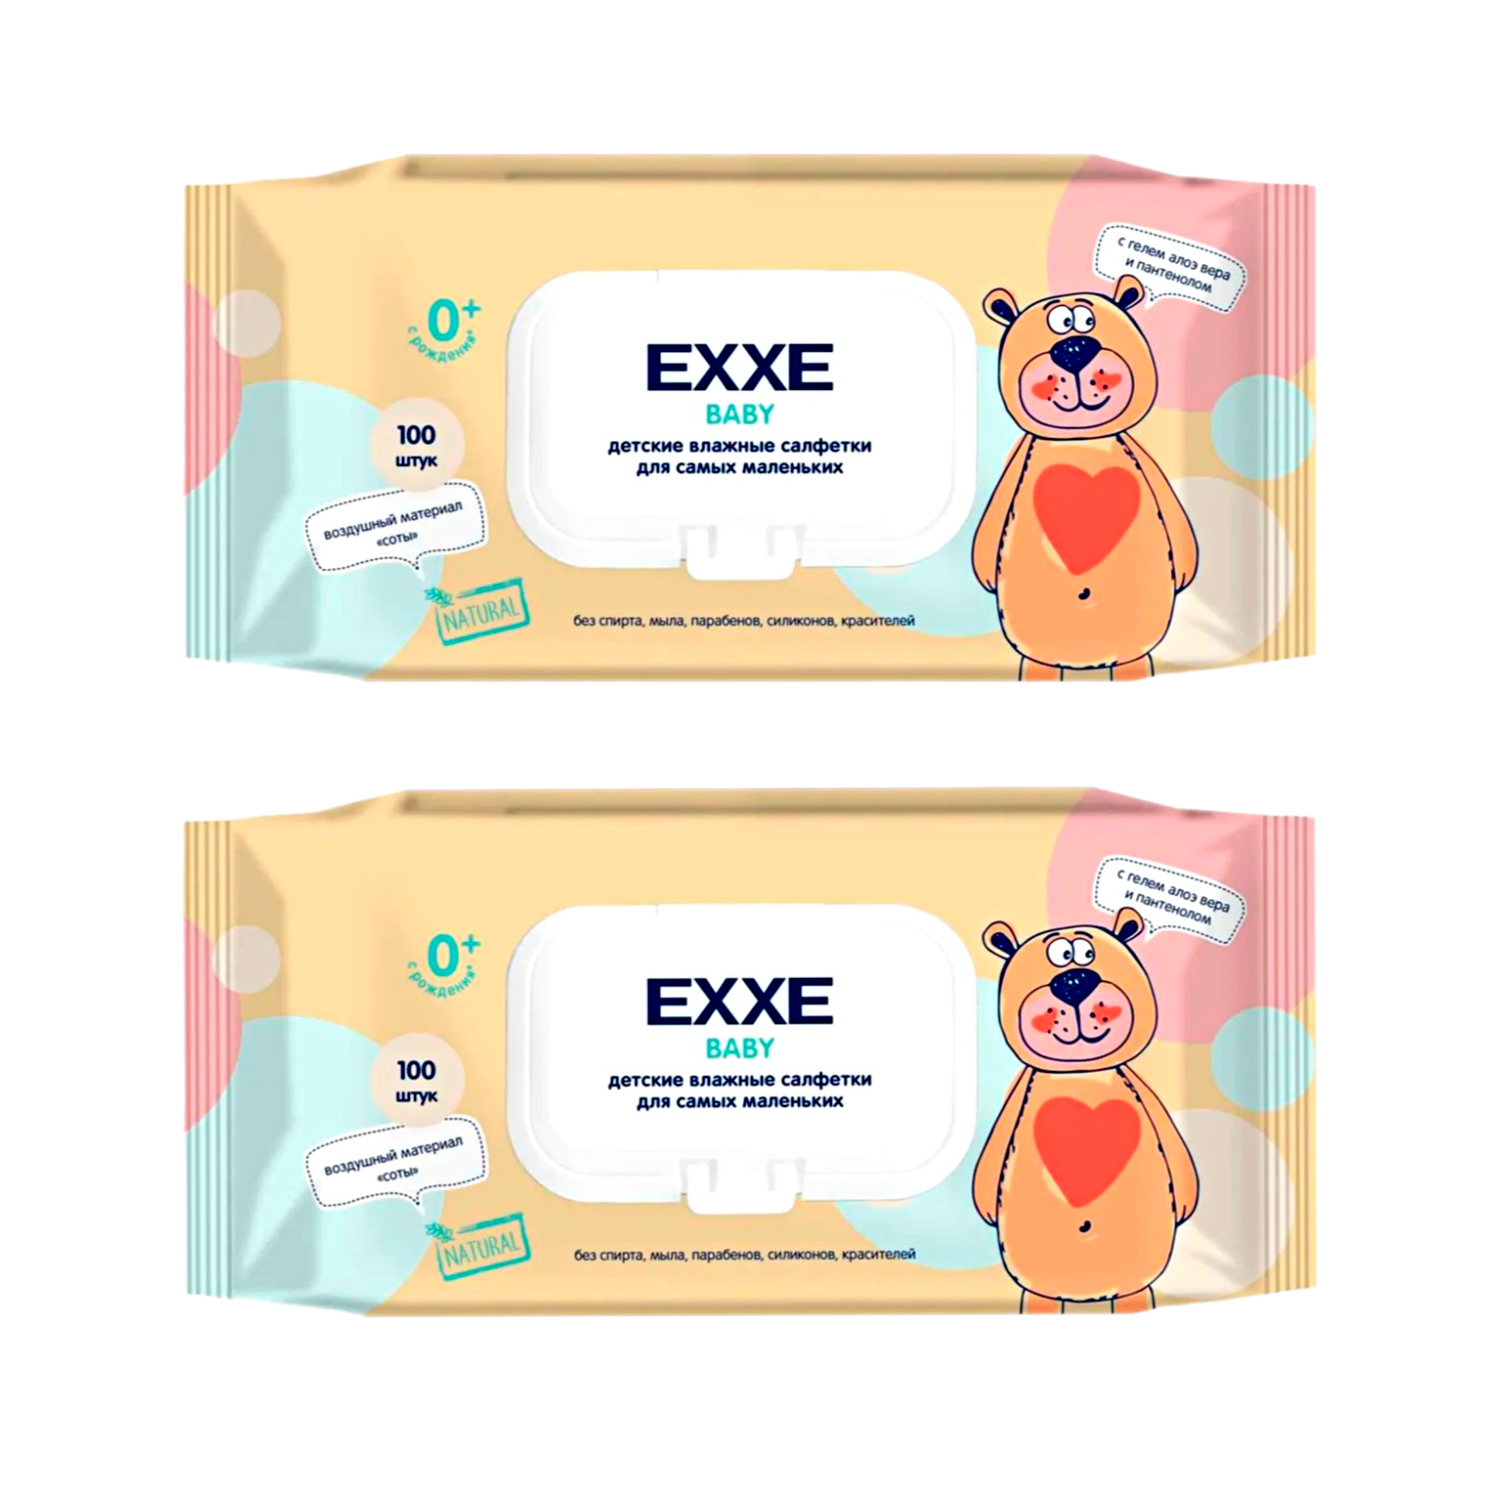 Влажные салфетки для детей EXXE Baby серия 0+ 100 штук 2 упаковки - фото 1